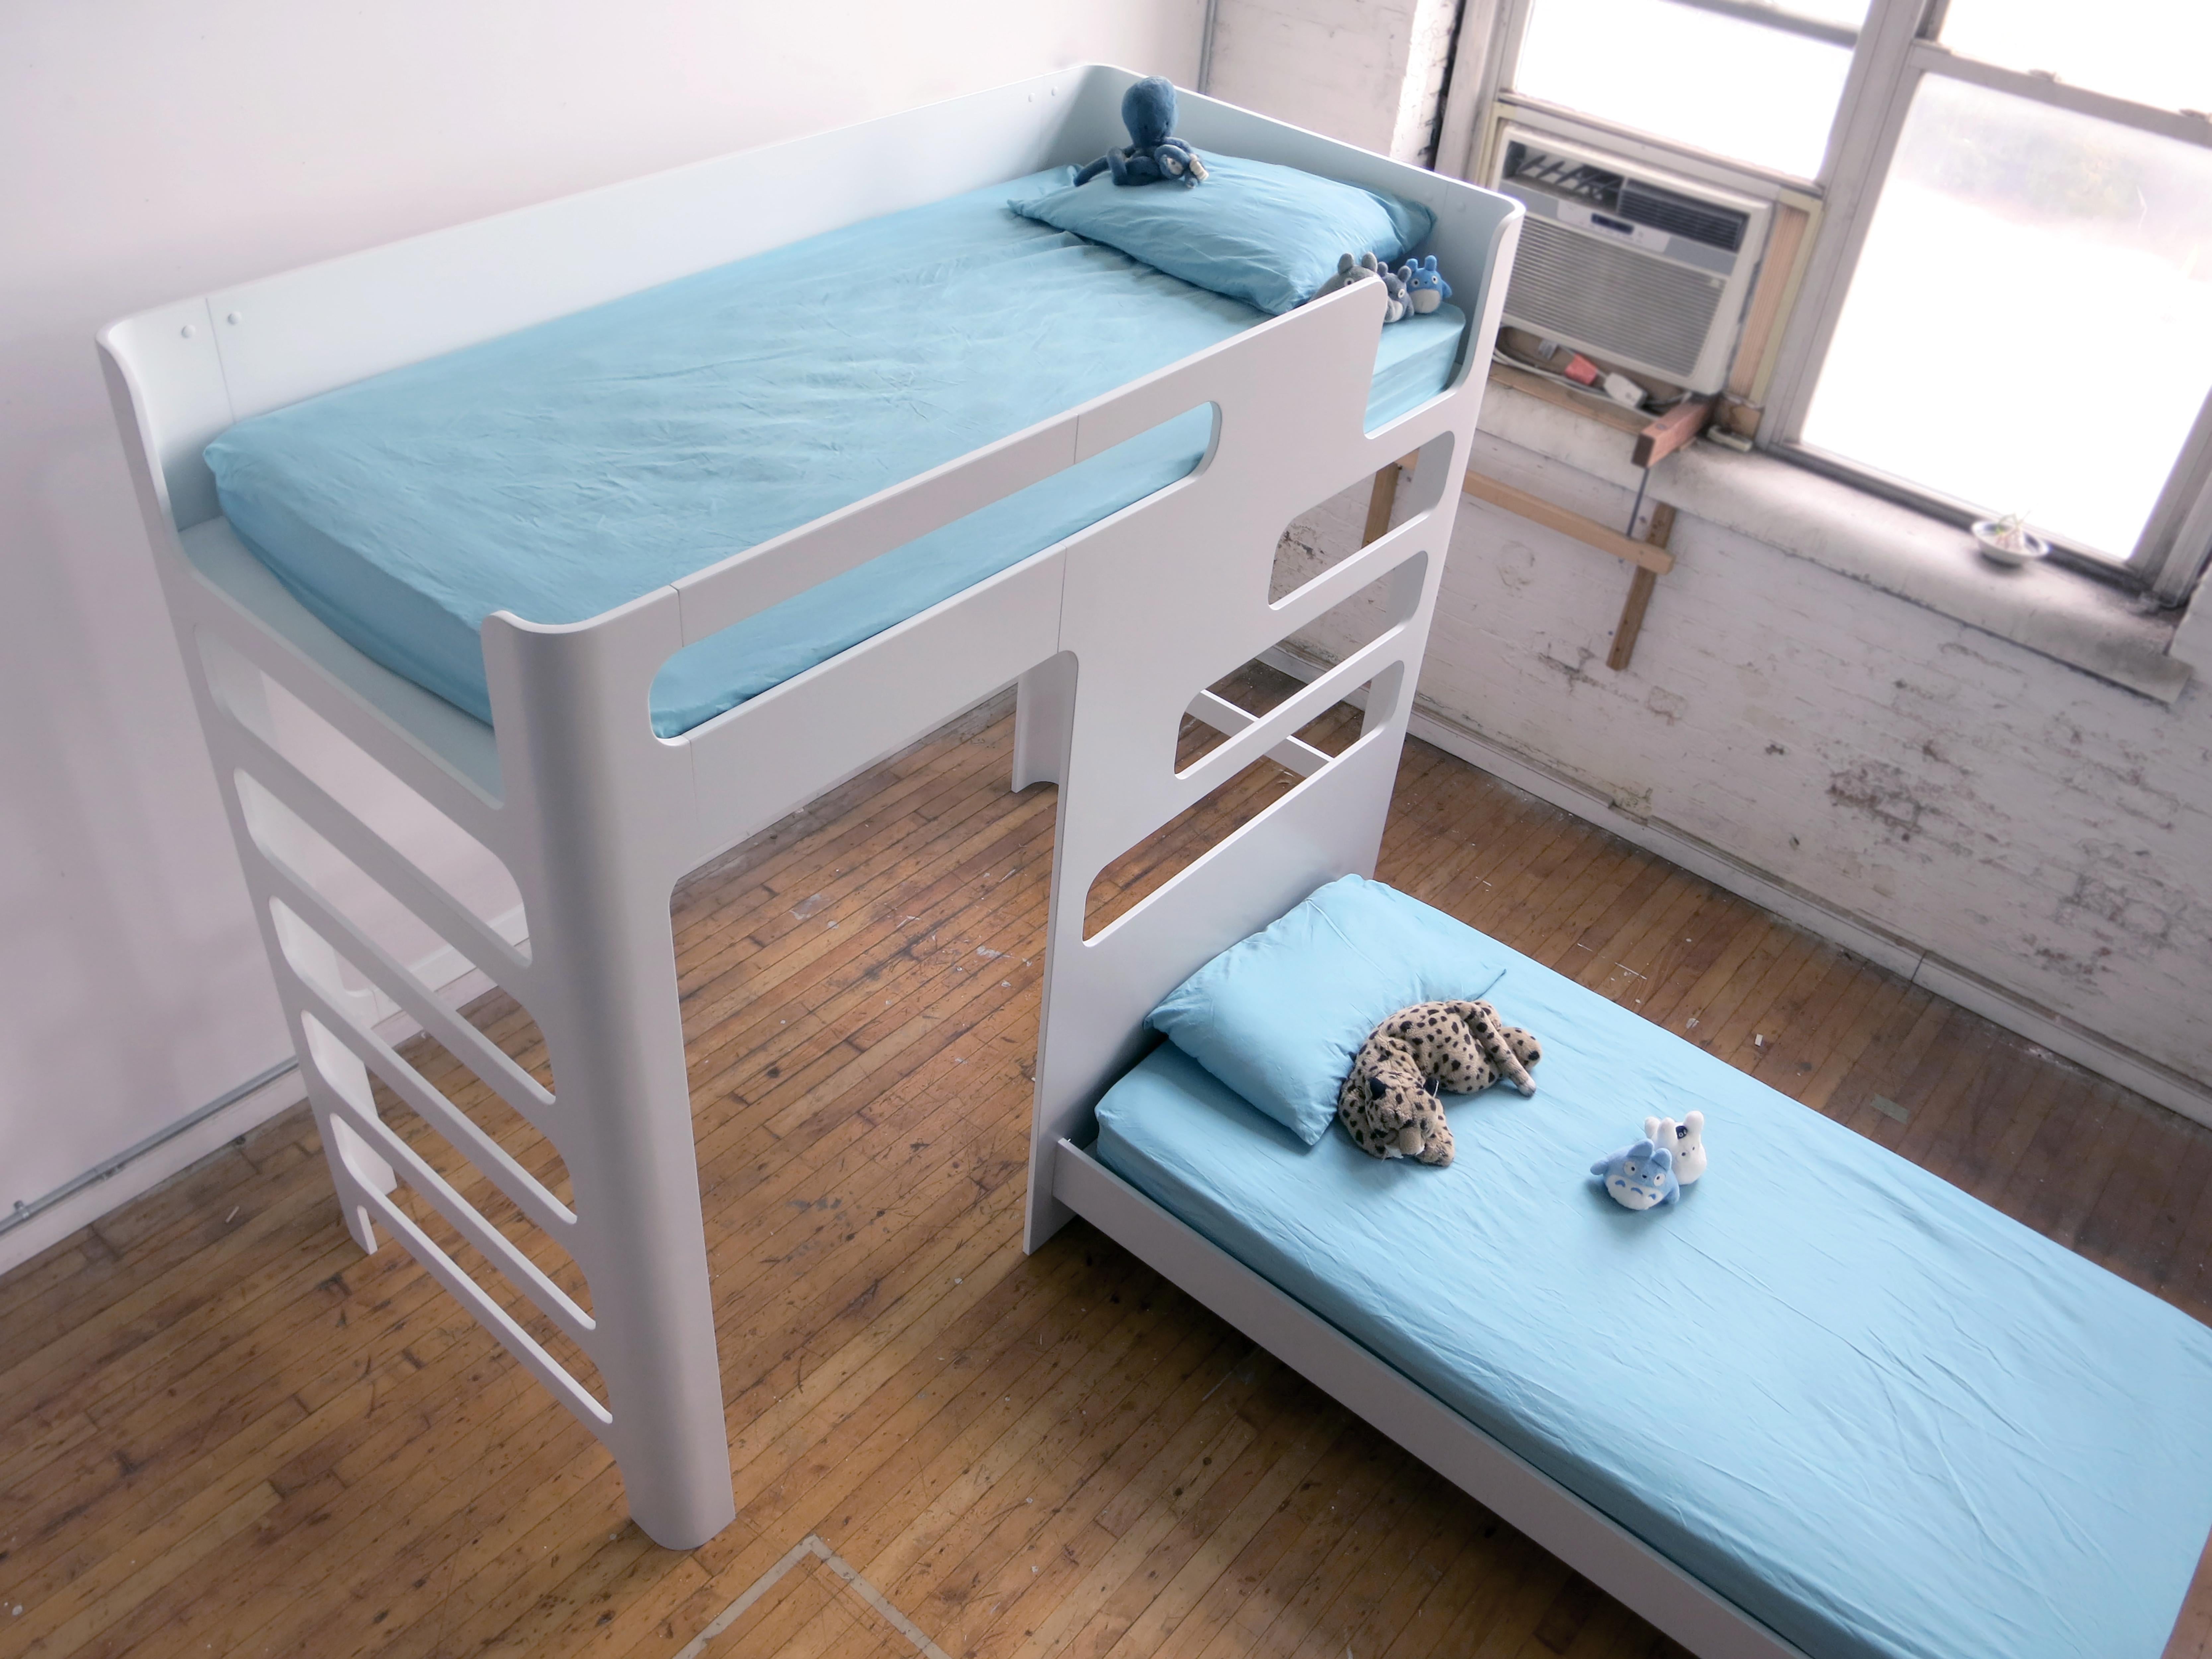 C'est un lit superposé pour enfants. Livré à plat et facile à assembler avec une simple came et des boulons de fixation. Sur la photo, deux matelas de taille normale. L'unité principale est surélevée à 5 pieds de hauteur. La configuration, la